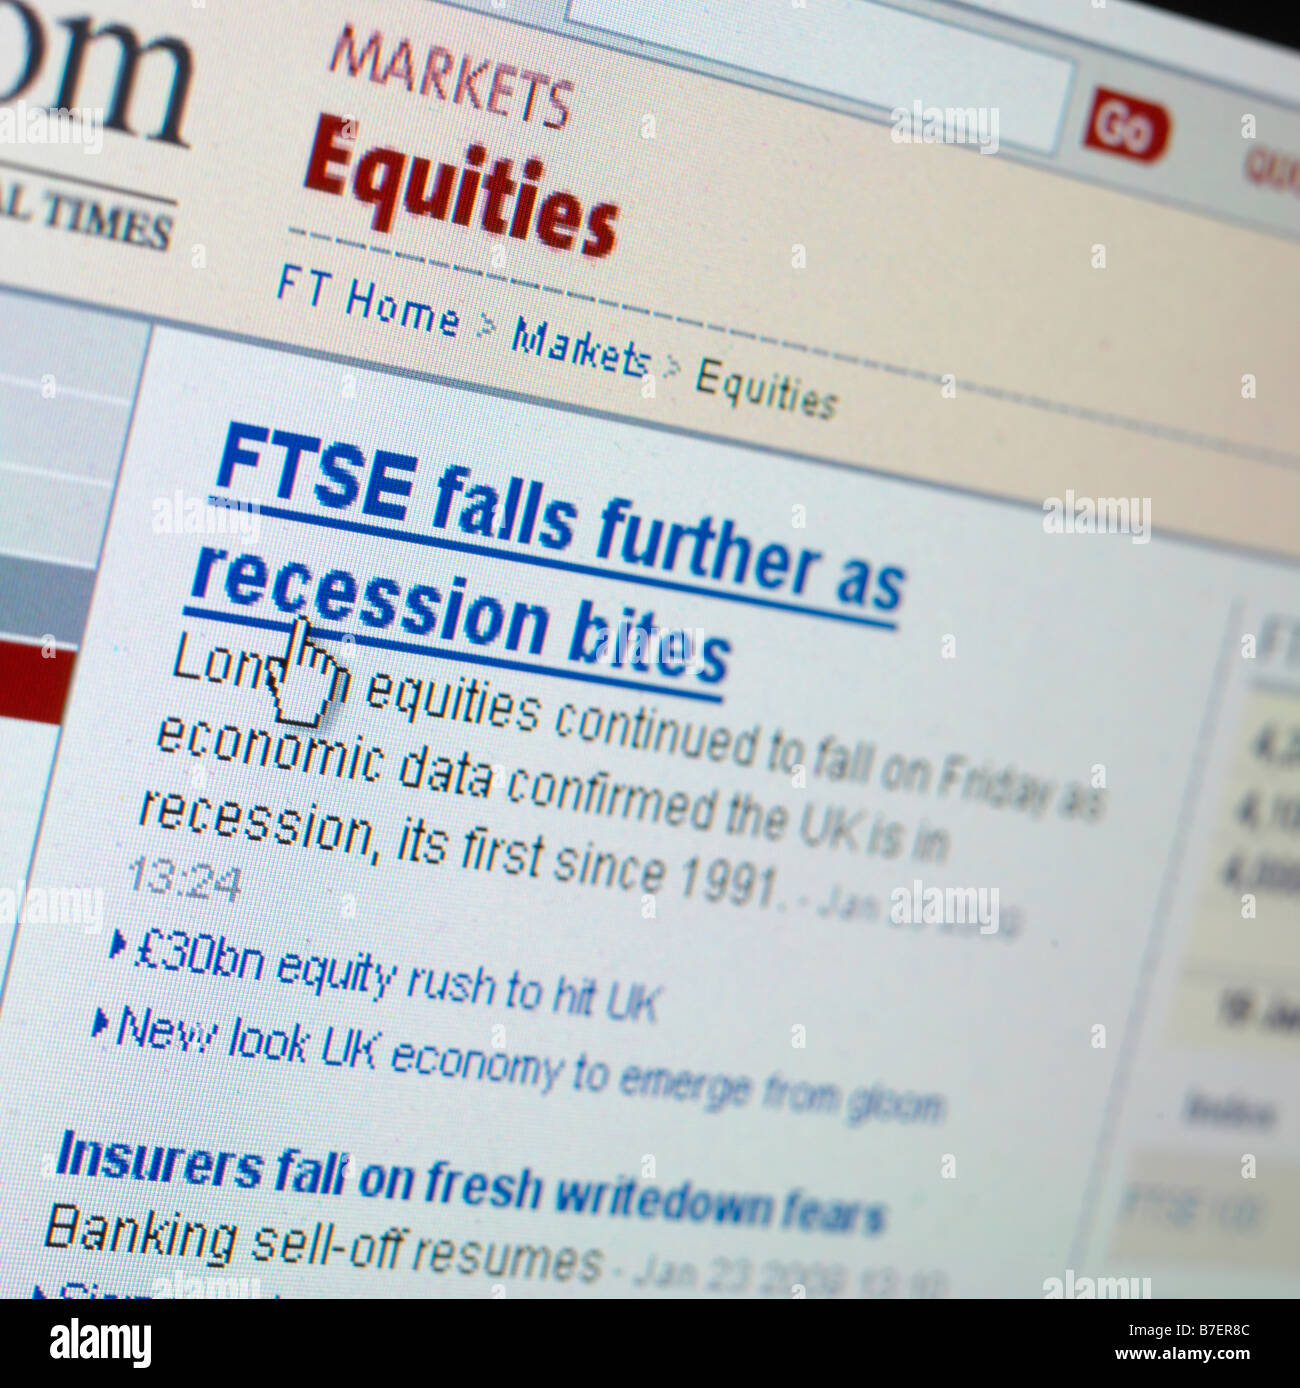 WEB SITE SCREEN UK ECONOMY ECONOMIC DOWNTURN Stock Photo